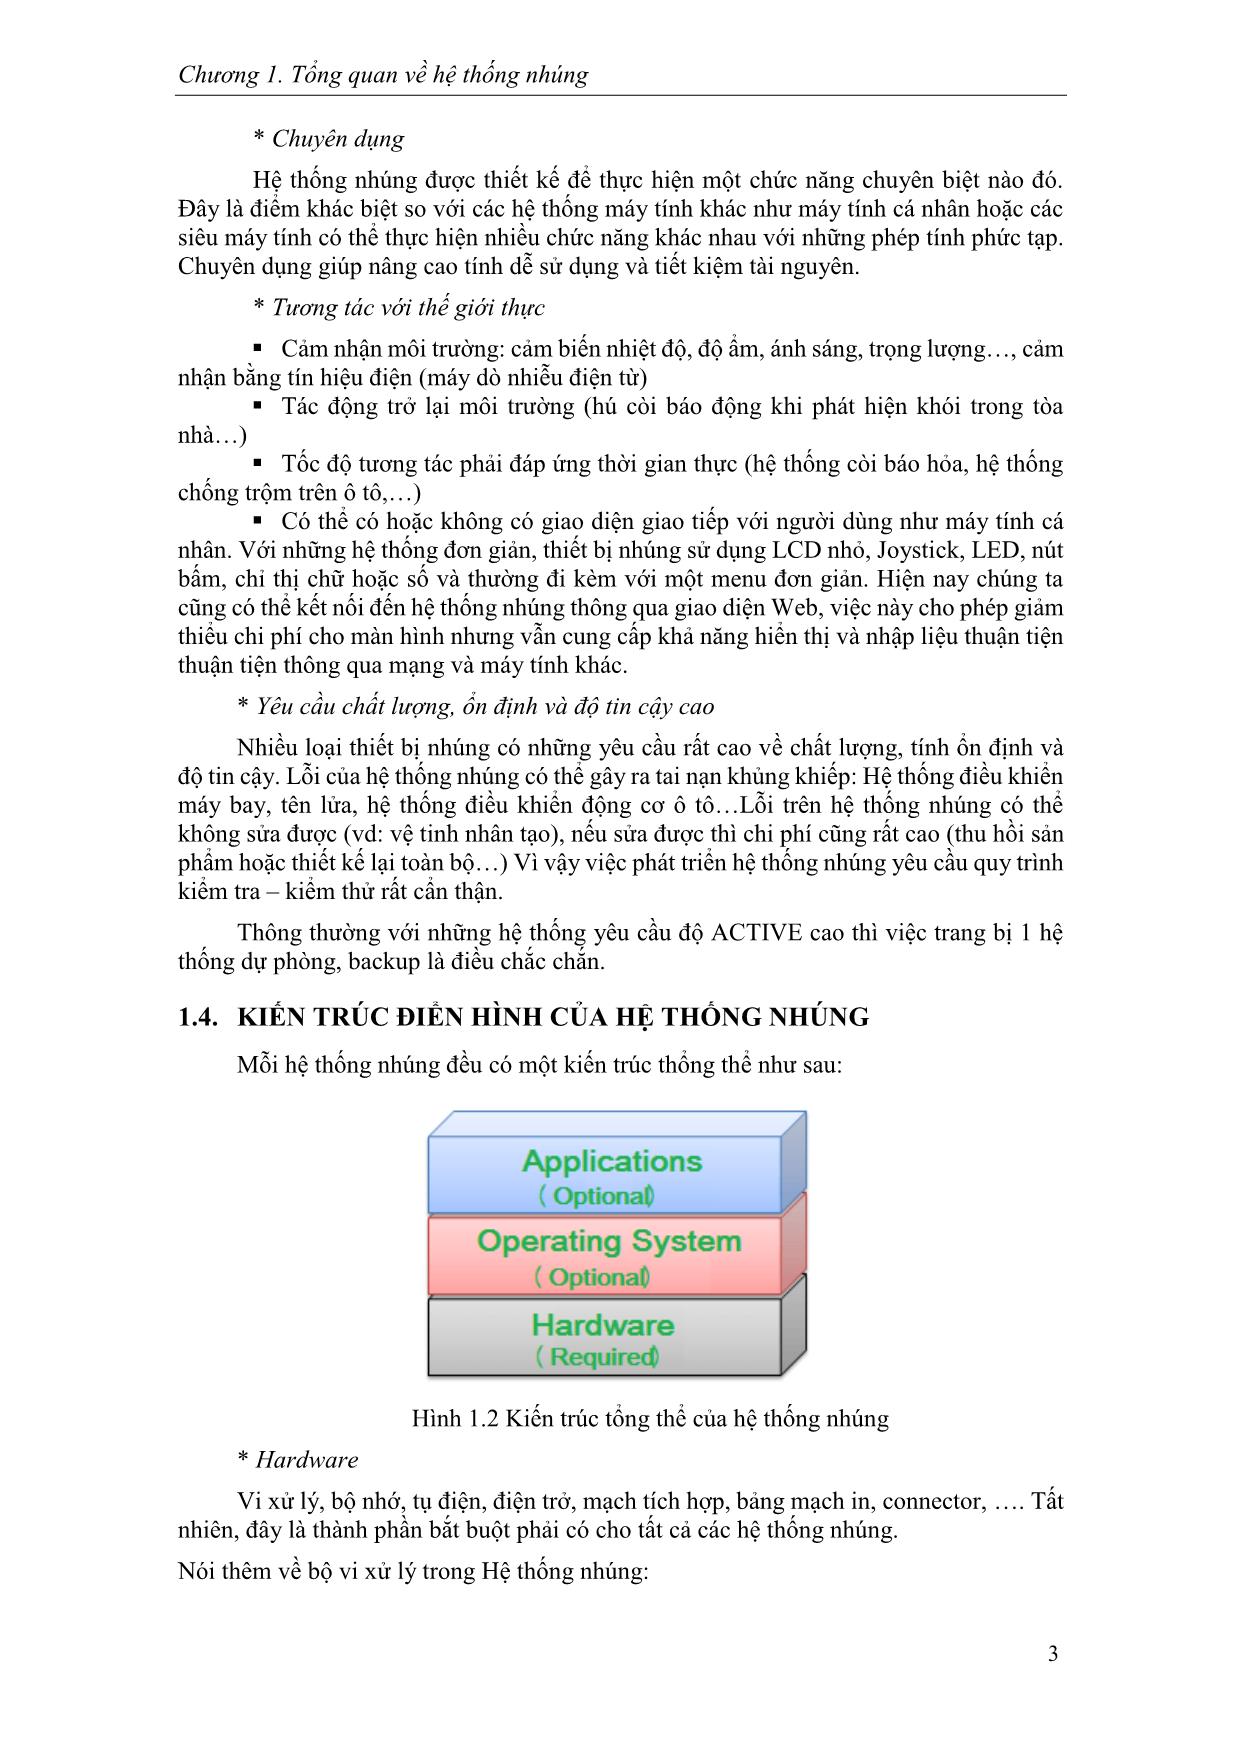 Giáo trình Hệ thống nhúng (Phần 1) trang 7